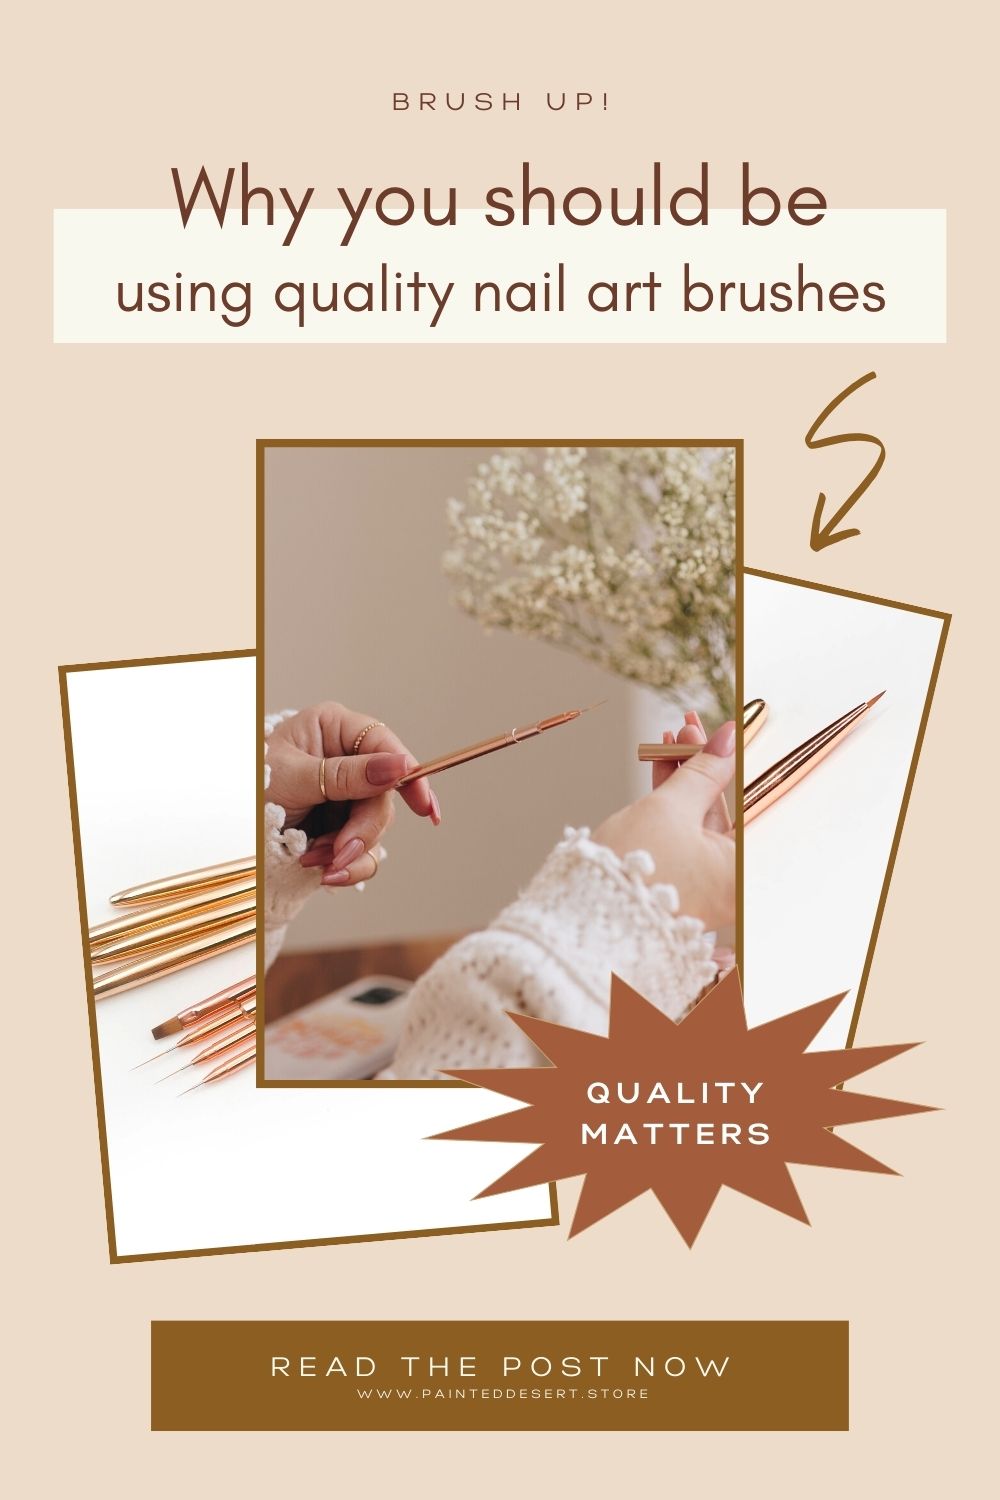 BRUSH UP on using quality nail brushes